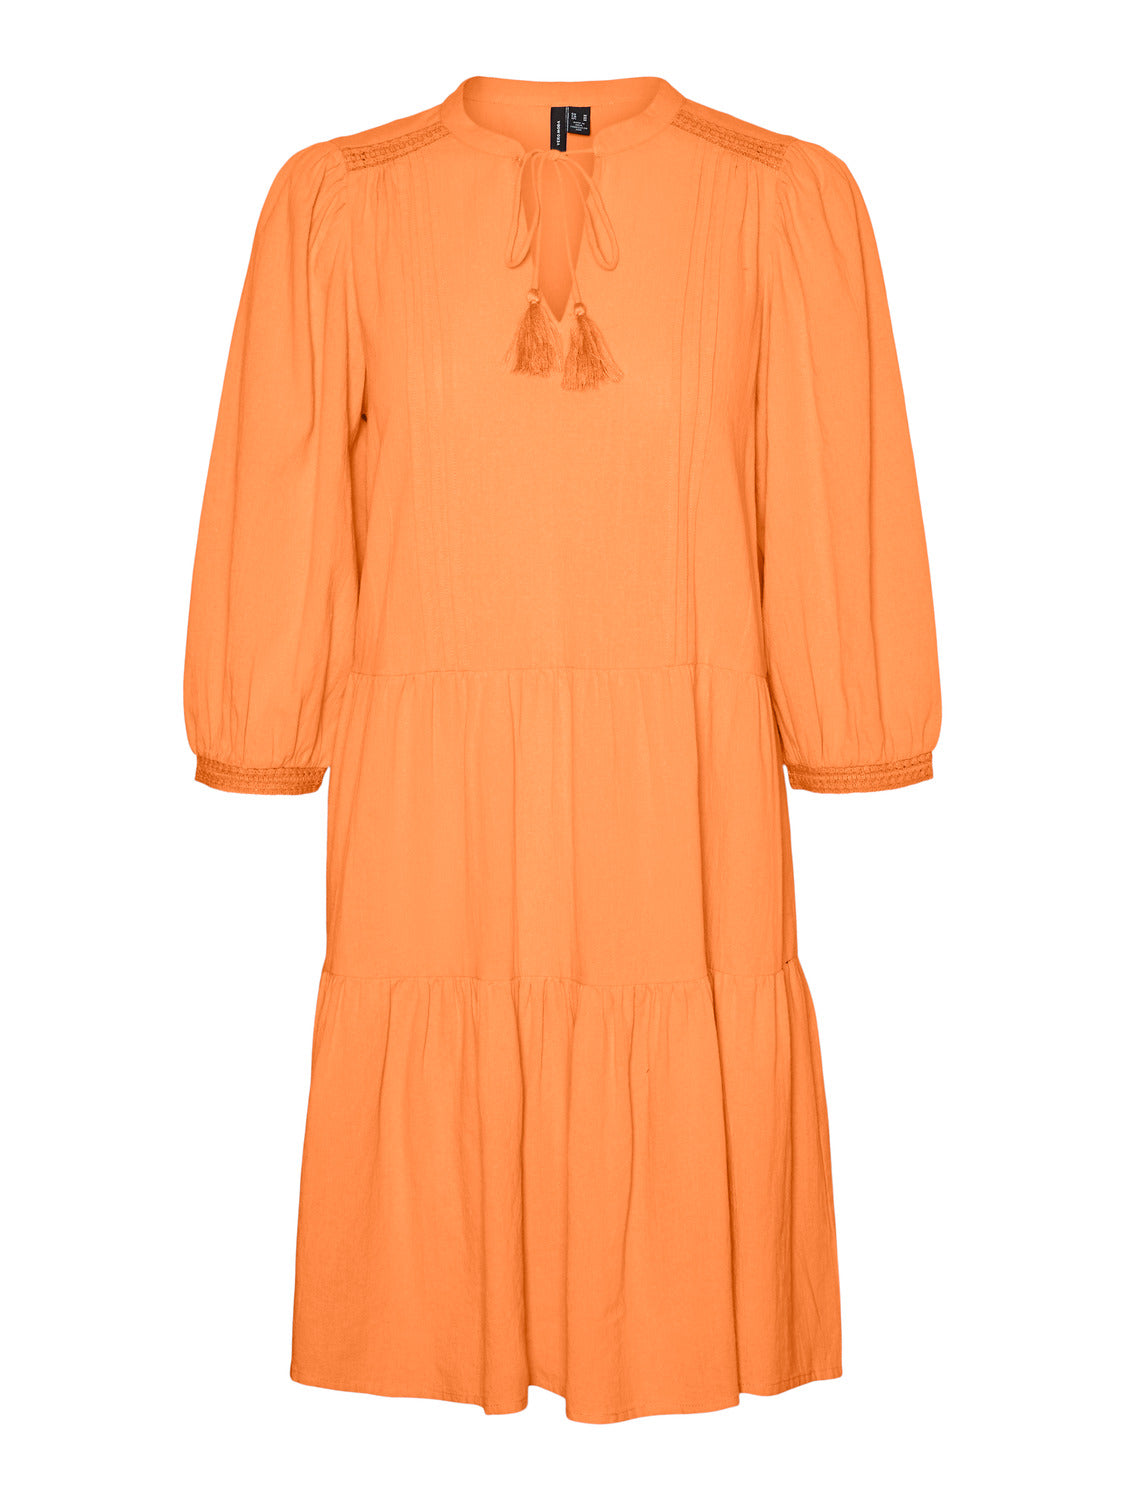 VMPRETTY Dress - Mock Orange